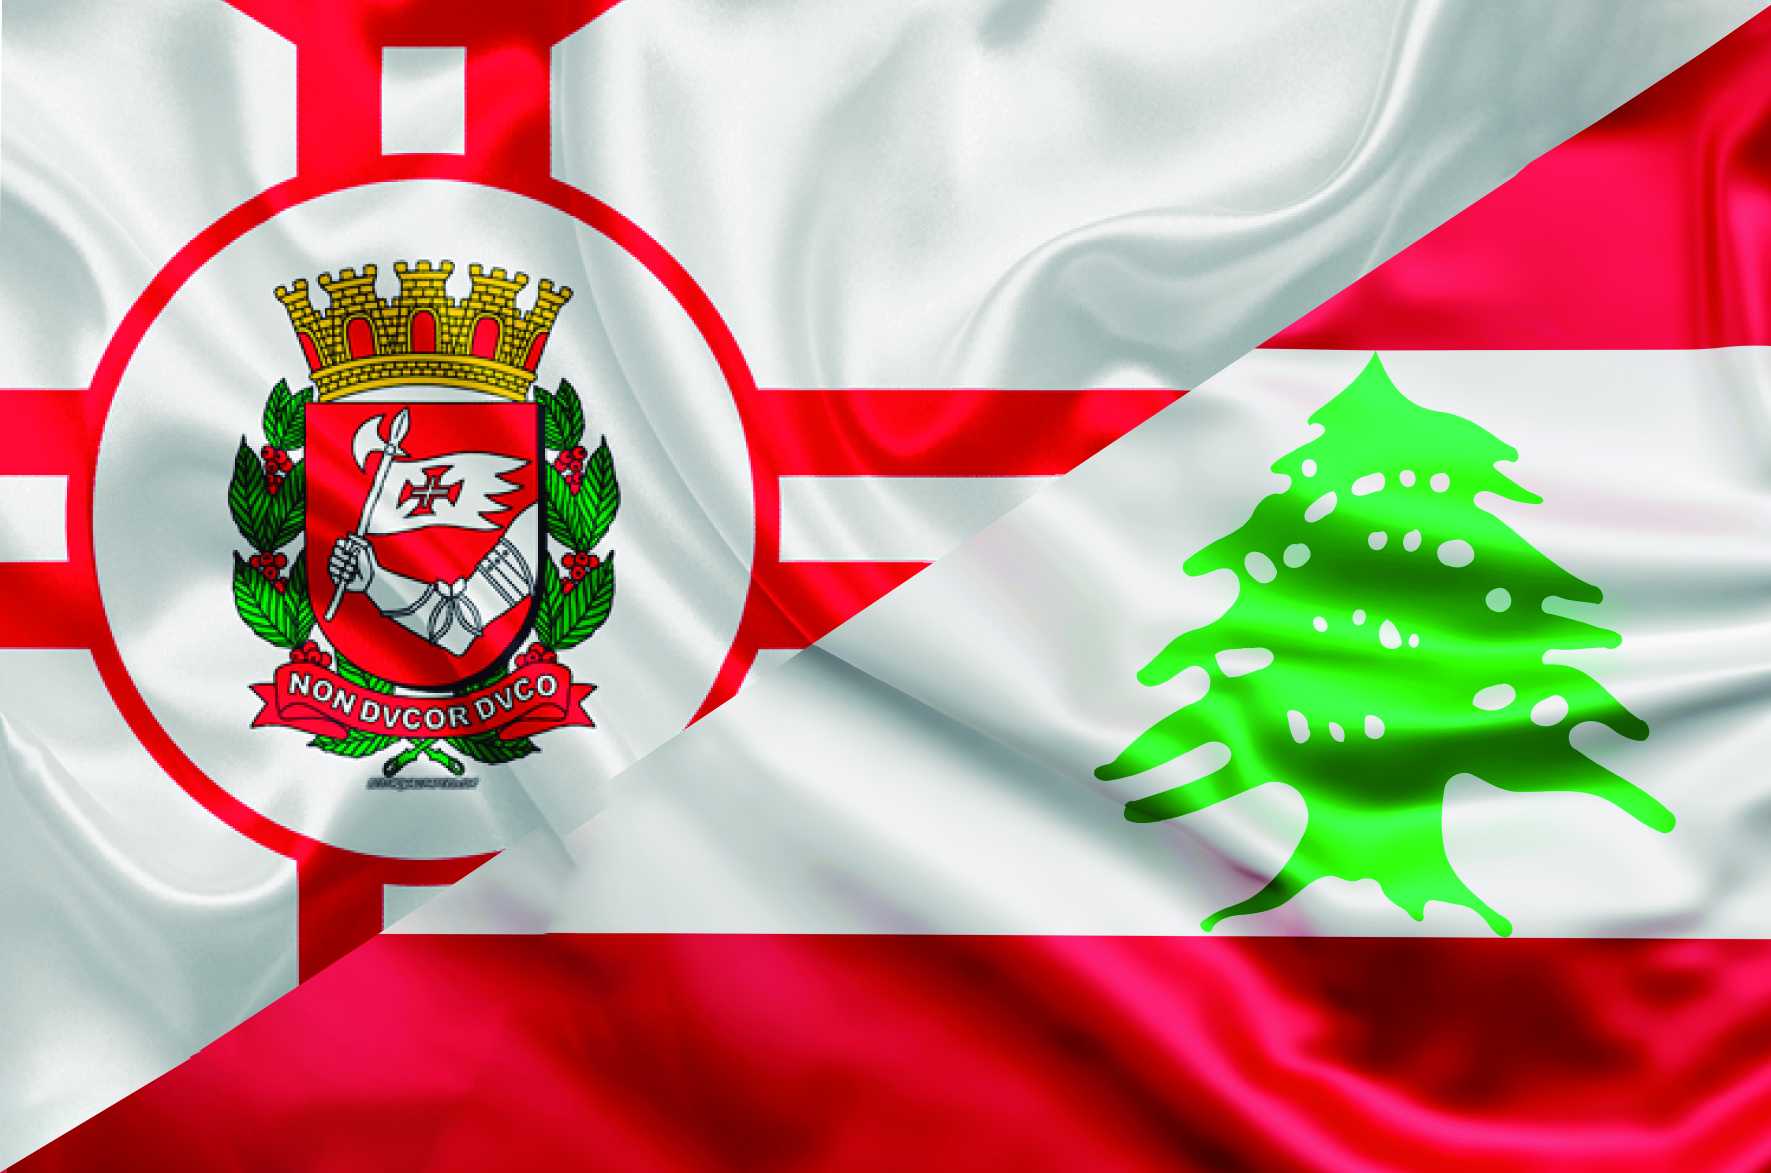 Arte com as bandeiras da cidade de São Paulo e do Líbano.